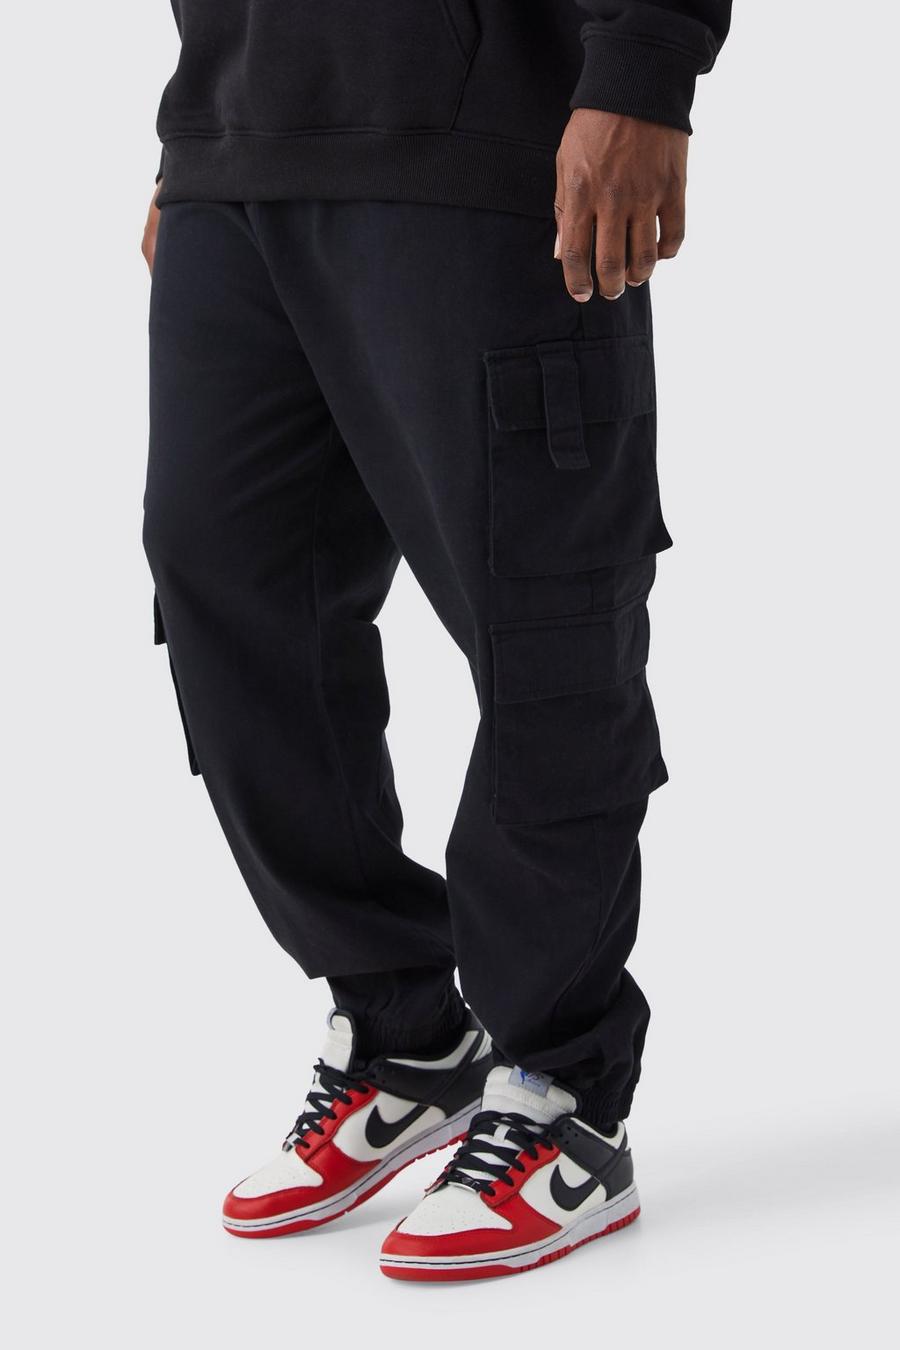 Pantaloni tuta Plus Size Slim Fit con tasche Cargo e vita elasticizzata, Black